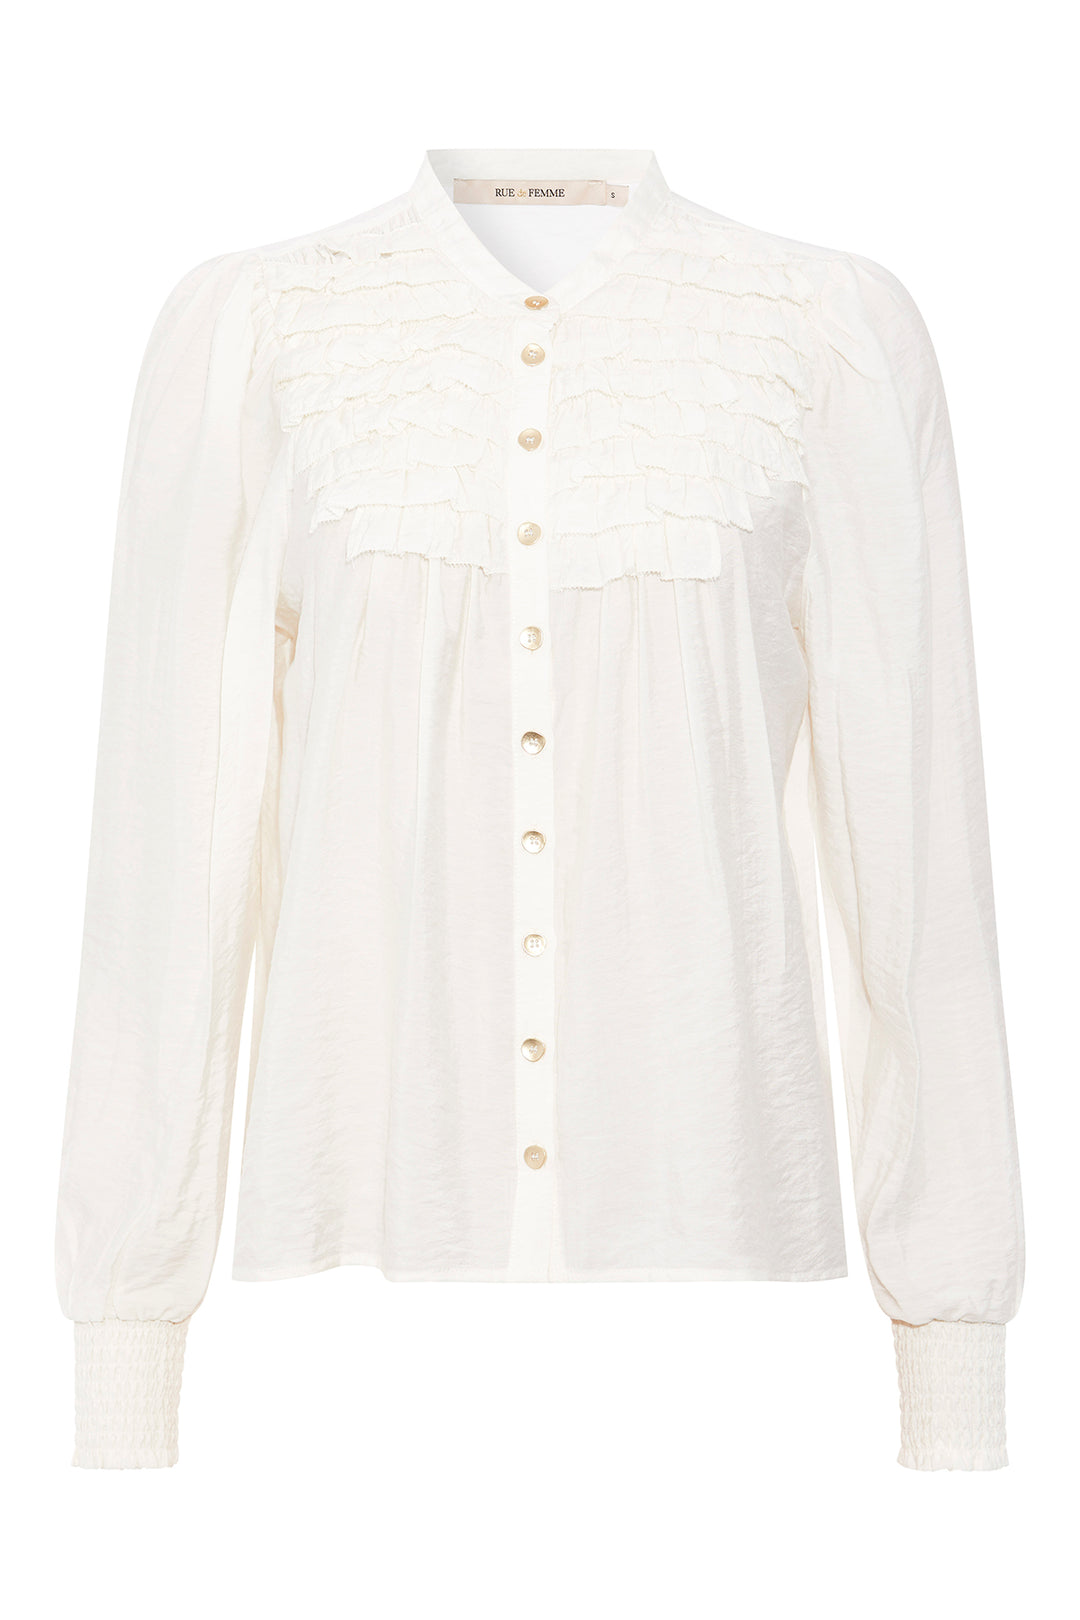 Rue de Femme Tiluley shirt RdF SHIRTS 01 White